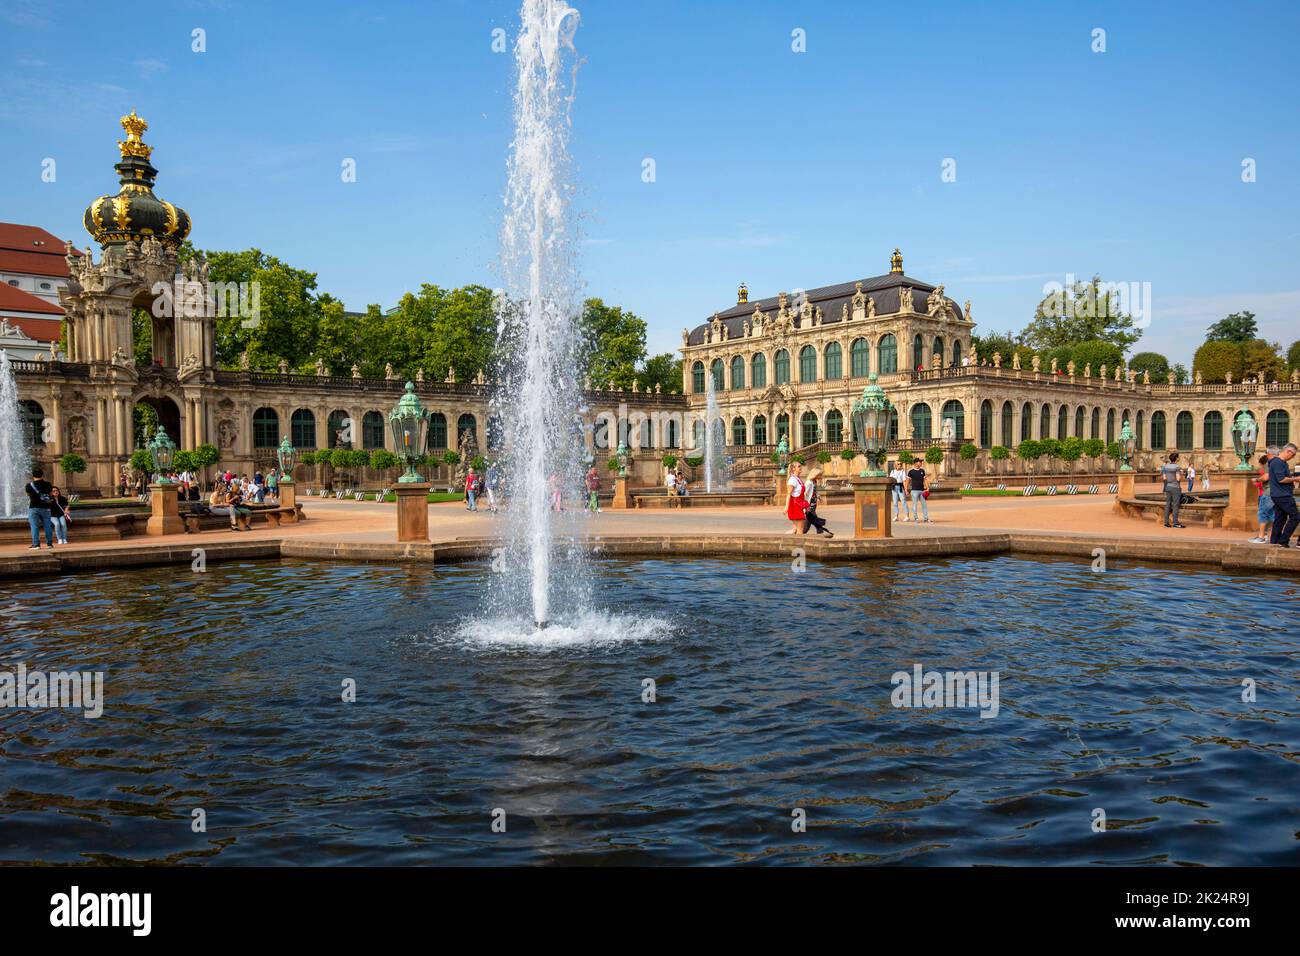 Dresde, Alemania - 23 de septiembre de 2020 : Palacio Zwinger barroco del siglo 18th, vista sobre el Salón Mathematisch-Physikalischer, galería larga, Puerta de la Corona también Foto de stock